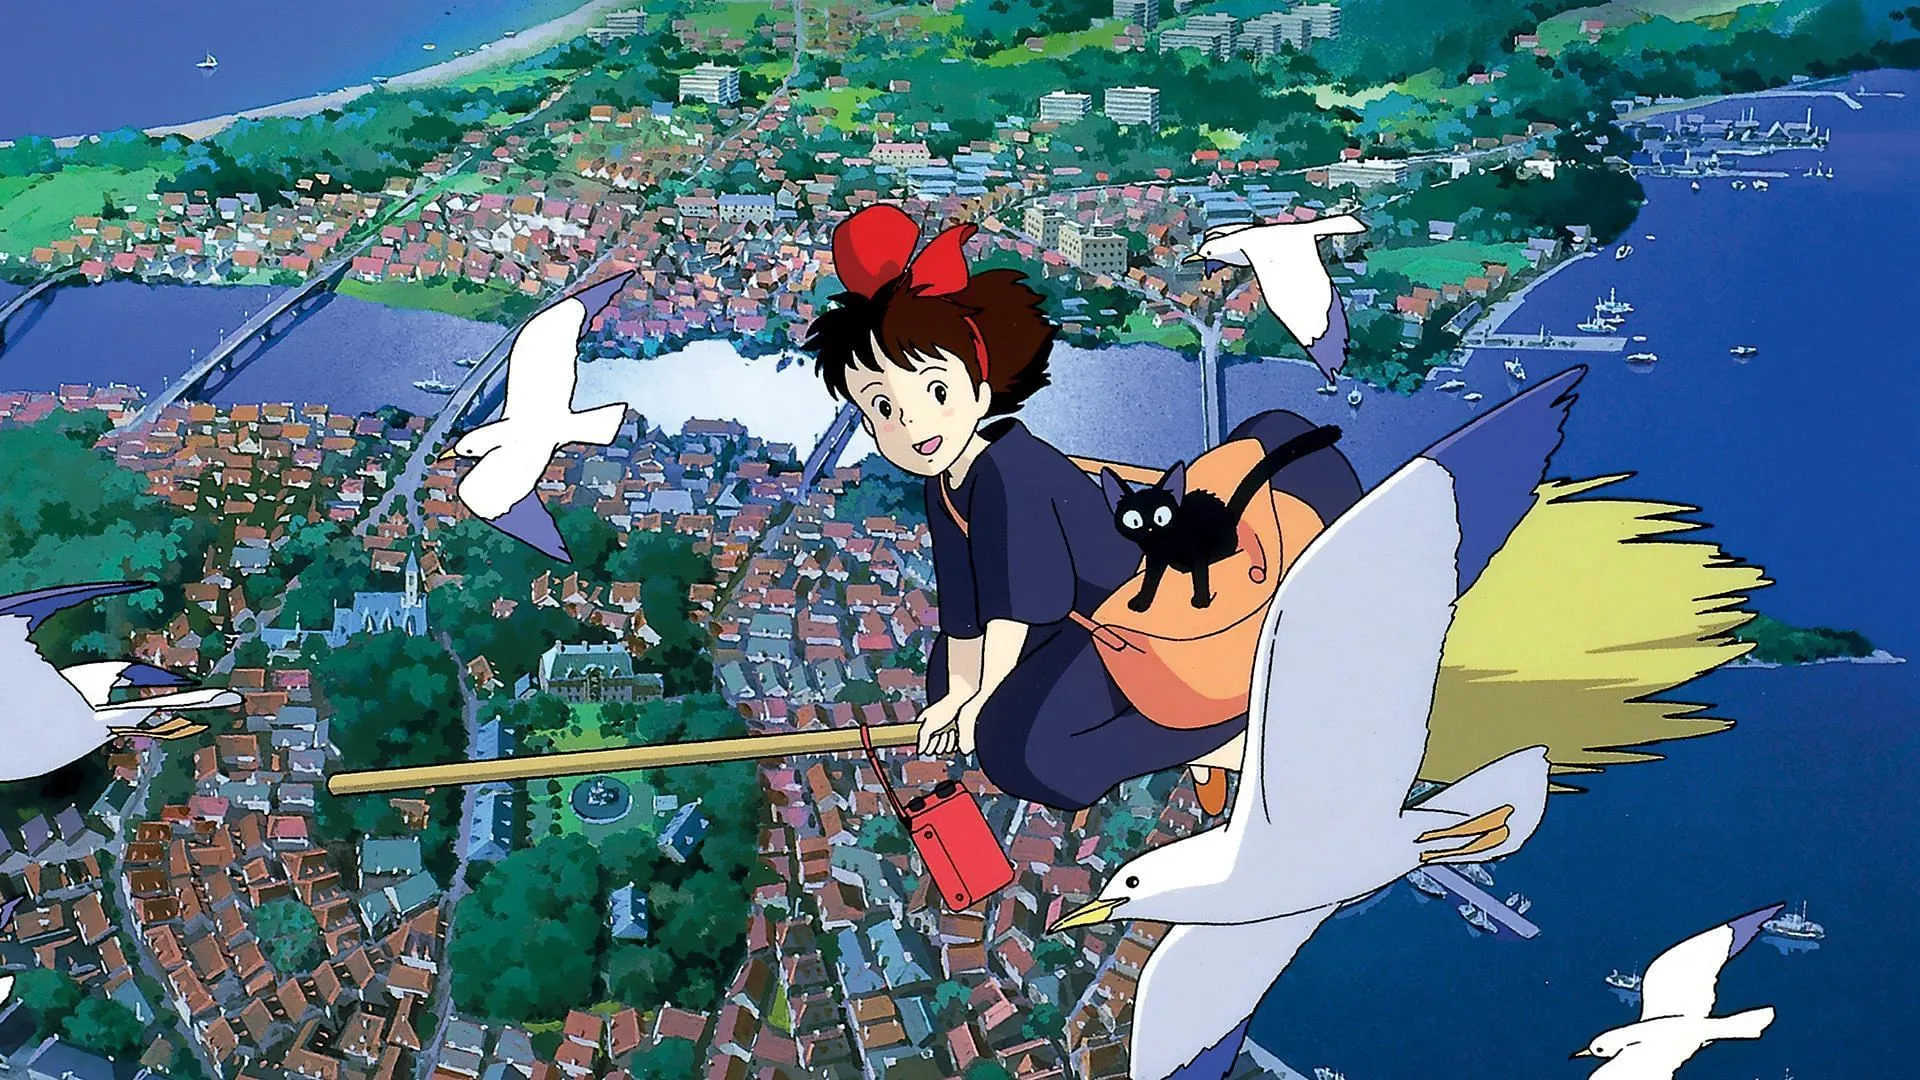 Servicio de entrega de Kiki (Imagen vía Studio Ghibli)